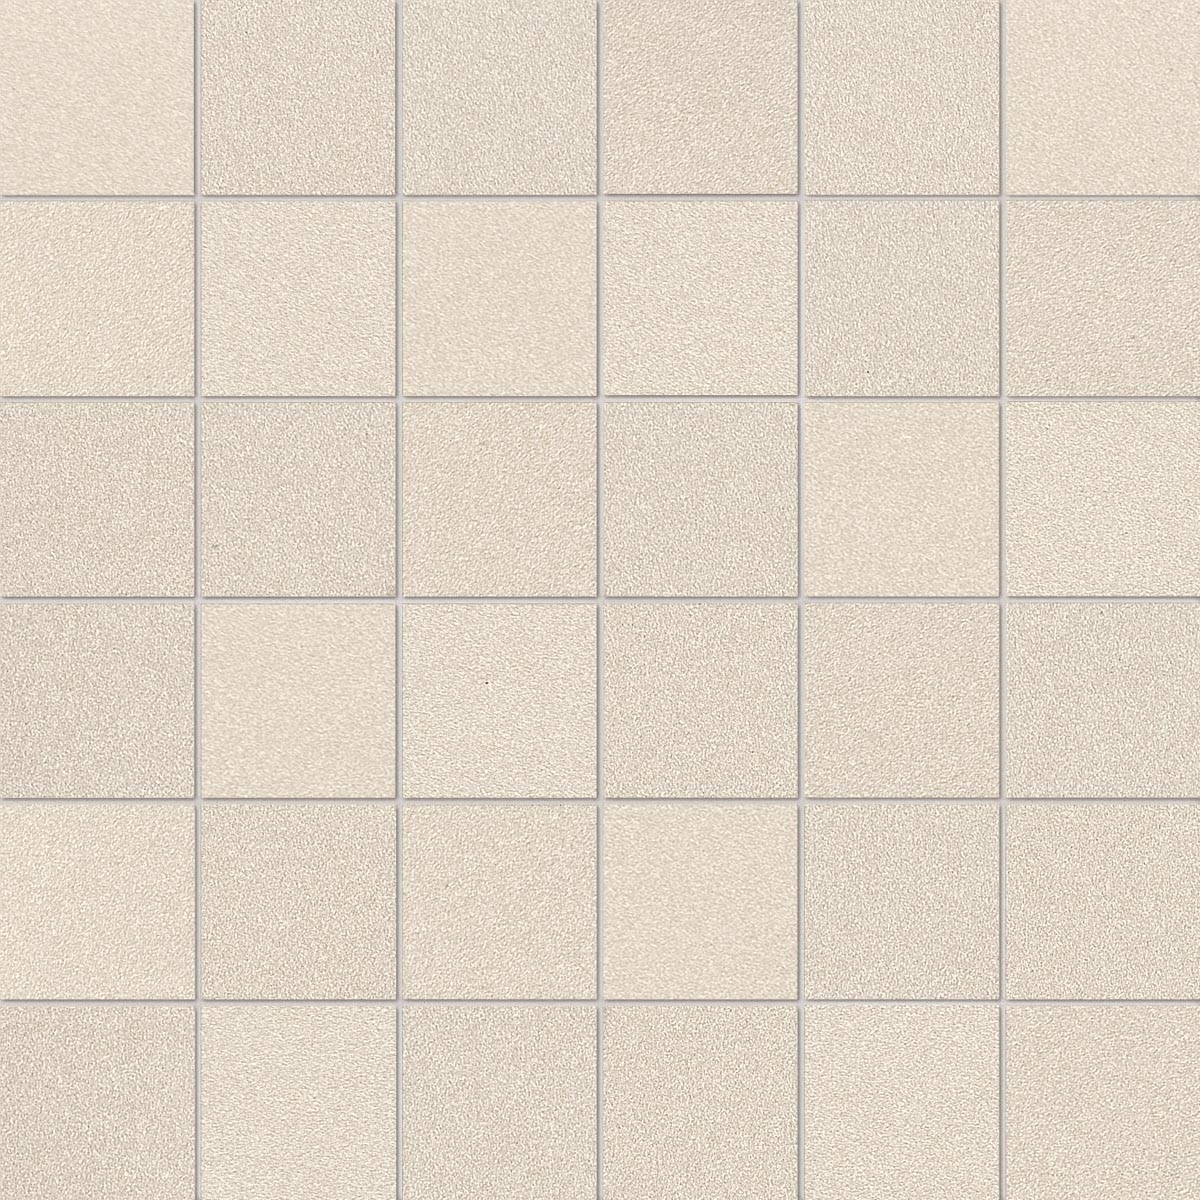 Imola Parade Bianco Natural Flat Matt Mosaic 167476 30x30cm rectified 10,5mm - MK.PRTU 30W